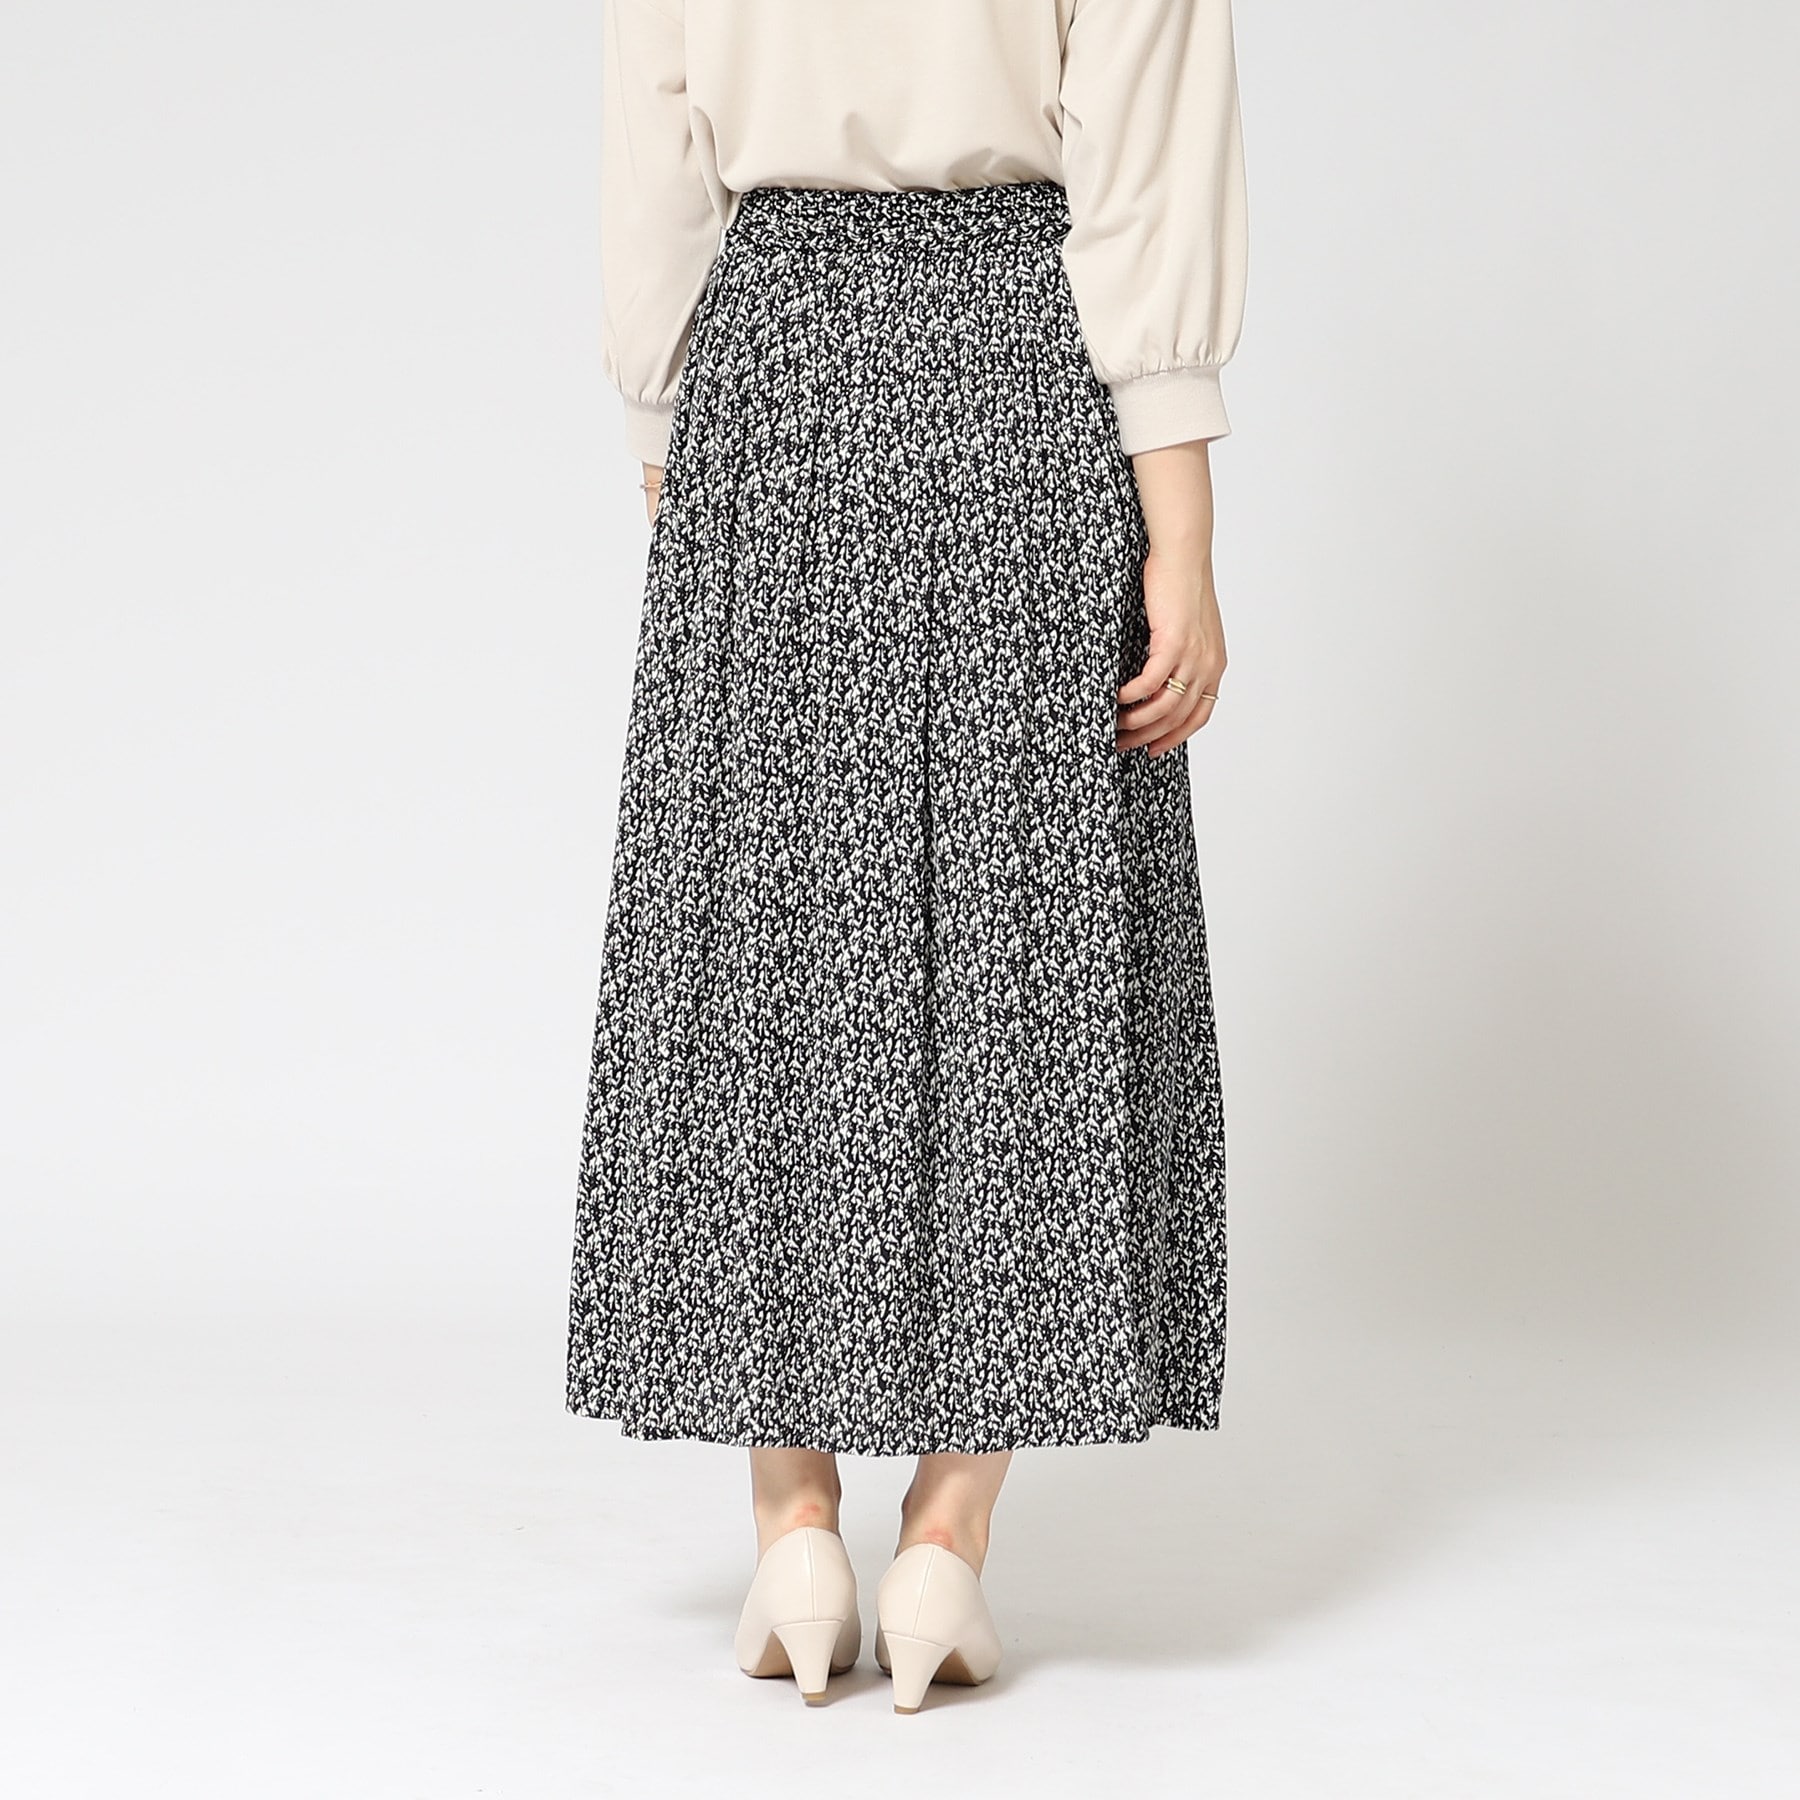 シューラルー/ドレスキップ(SHOO・LA・RUE/DRESKIP)の女性らしさあふれる サテンギャザースカート49